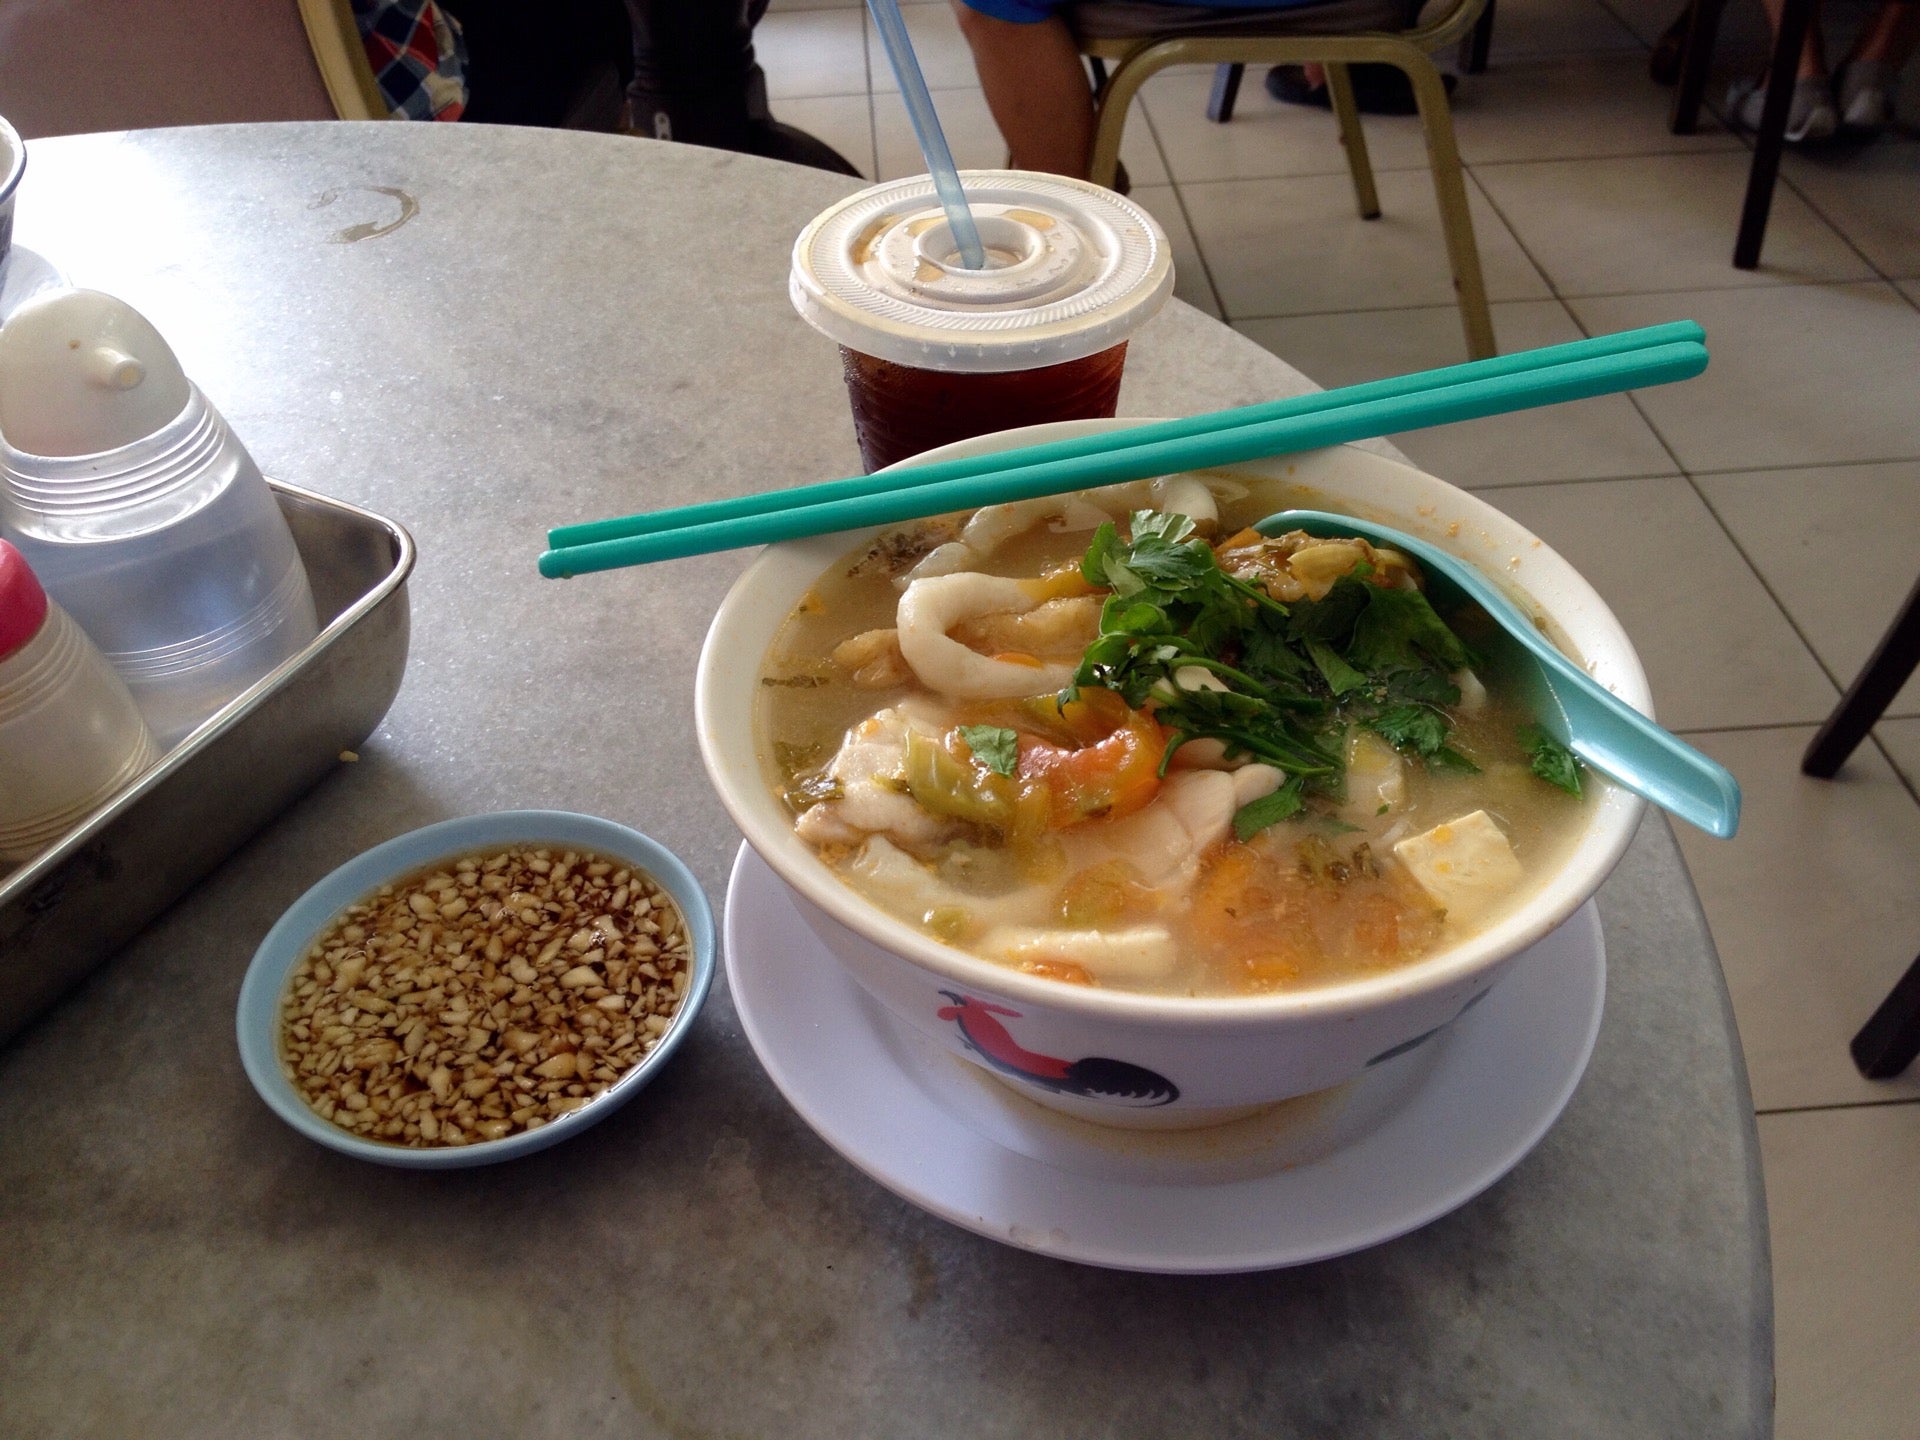 10641076 xkWz g Inilah 5 Restoran Yang Menghidangkan Sup Ikan Terbaik di Kota Kinabalu, Sabah